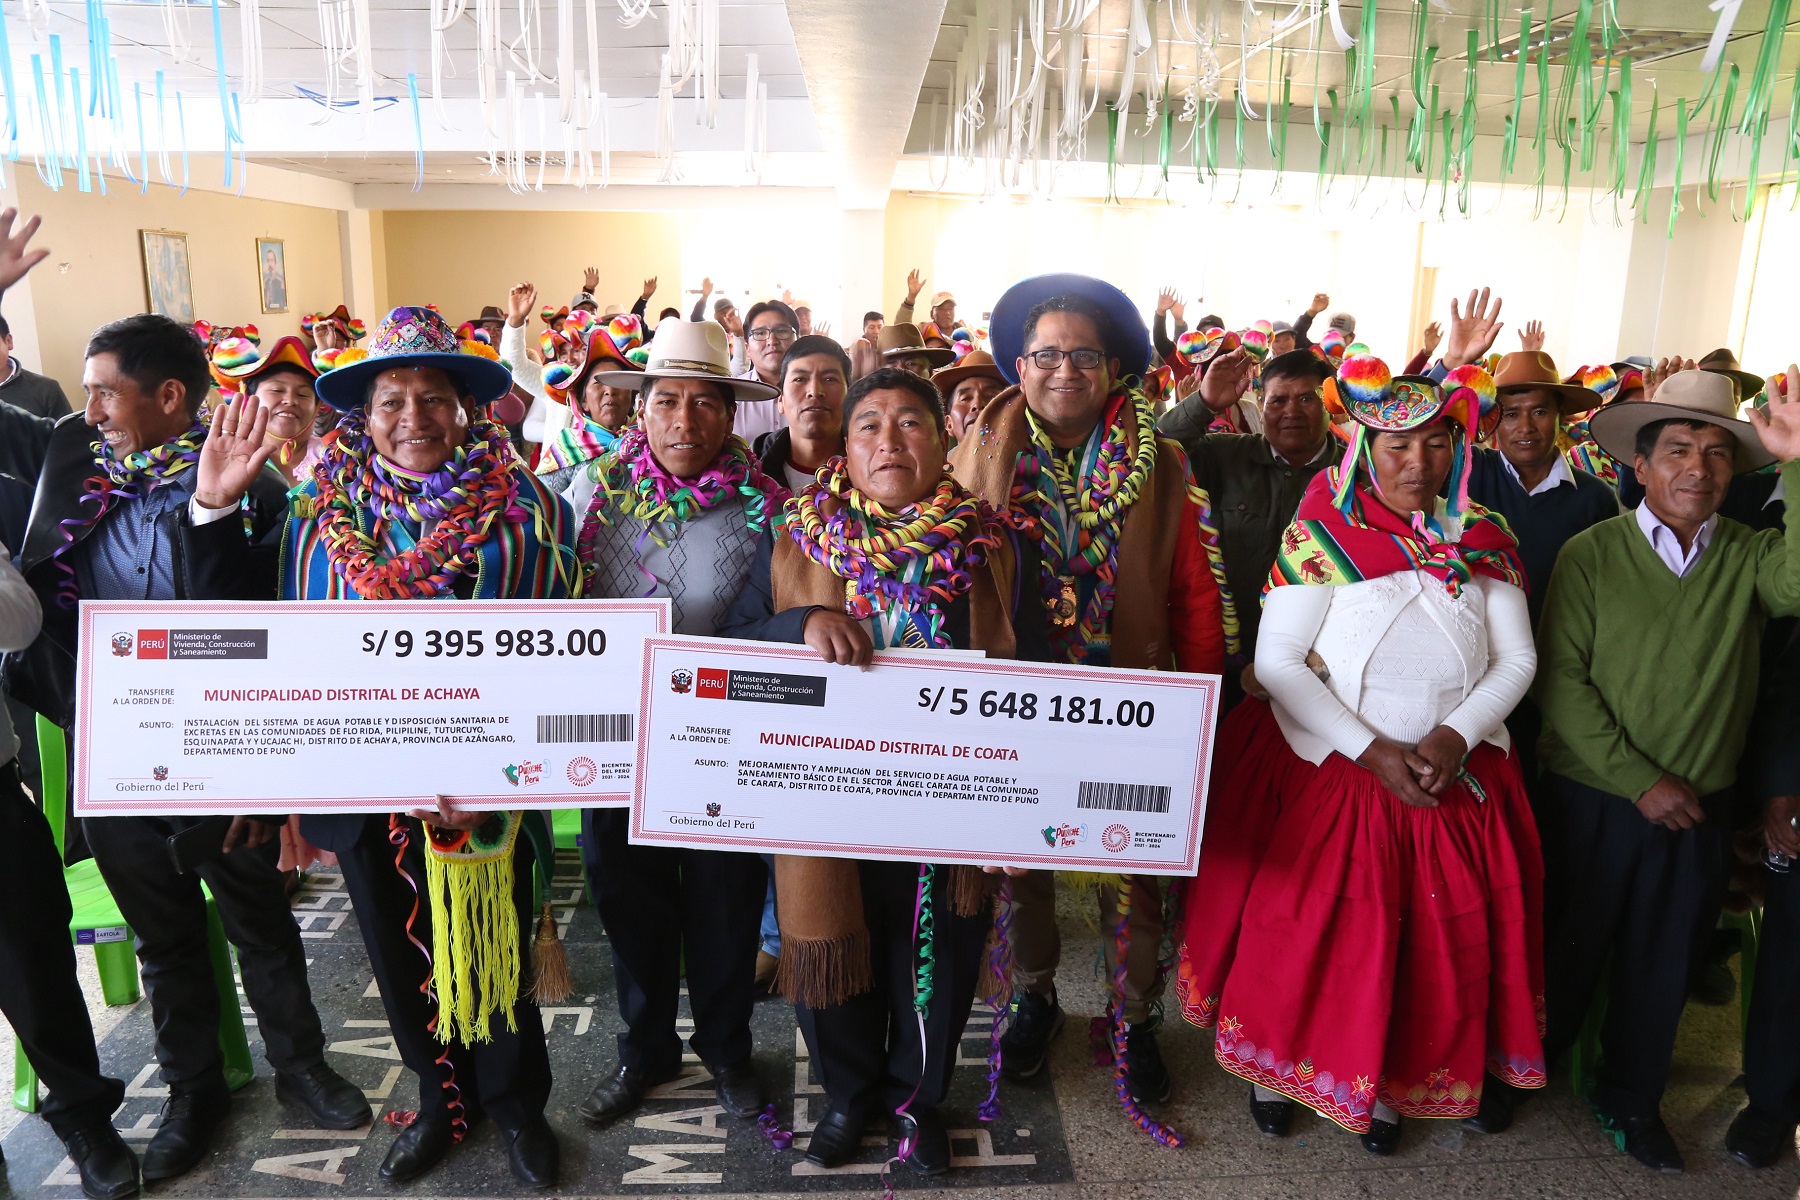 Ministerio de Vivienda financia obras esperadas por años, de agua y saneamiento por S/ 15 millones en zonas rurales de Coata y Achaya, región Puno.